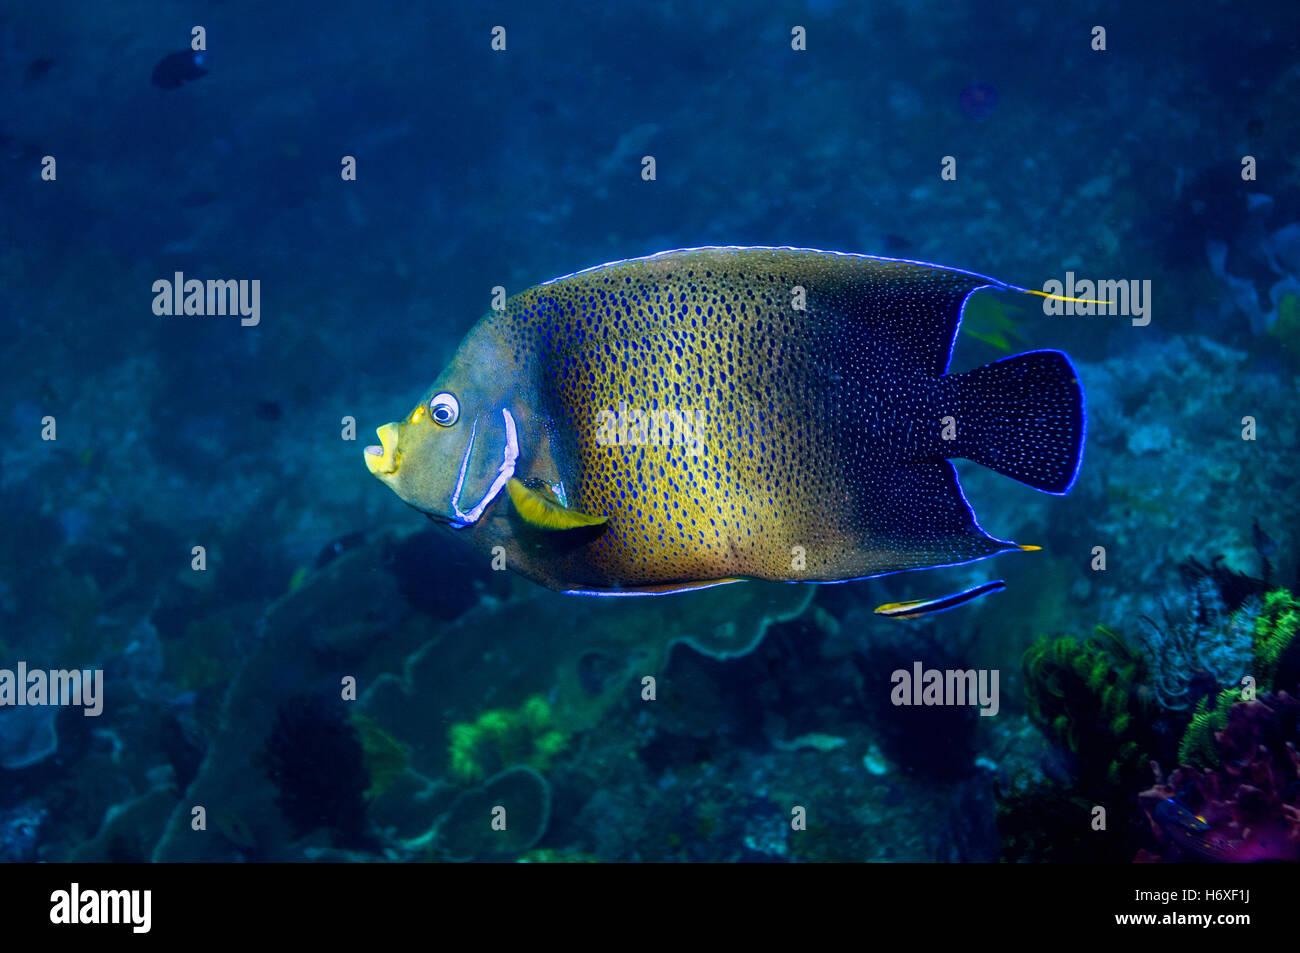 Angelfish Pomacanthus semicirculatus semi-circulaire [piscine] plus de barrière de corail. Le Parc National de Komodo, en Indonésie. Indo-pacifique. Banque D'Images